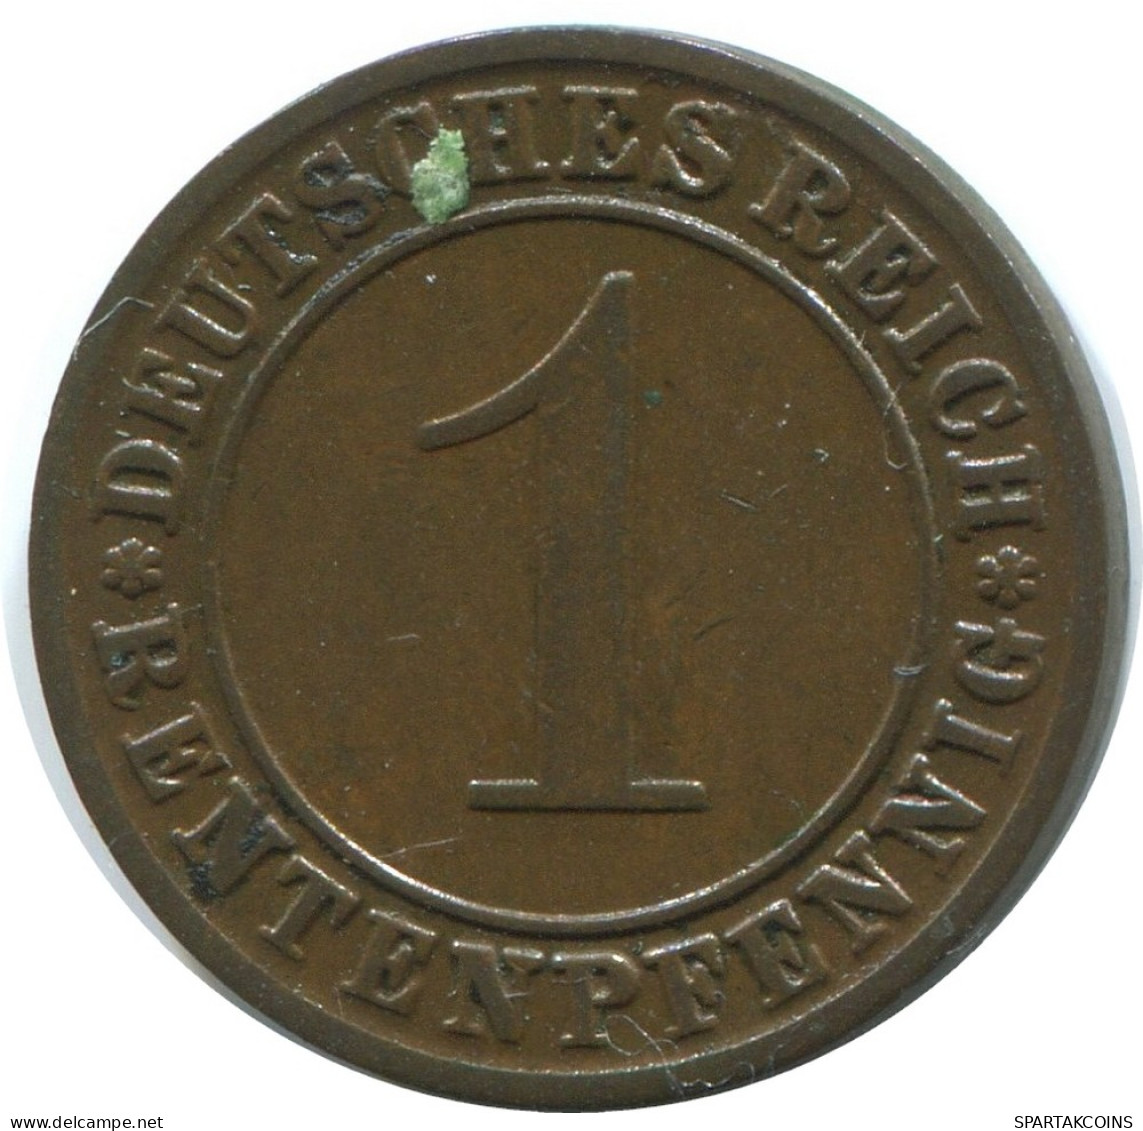 1 RENTENPFENNIG 1924 A DEUTSCHLAND Münze GERMANY #AE199.D - 1 Rentenpfennig & 1 Reichspfennig